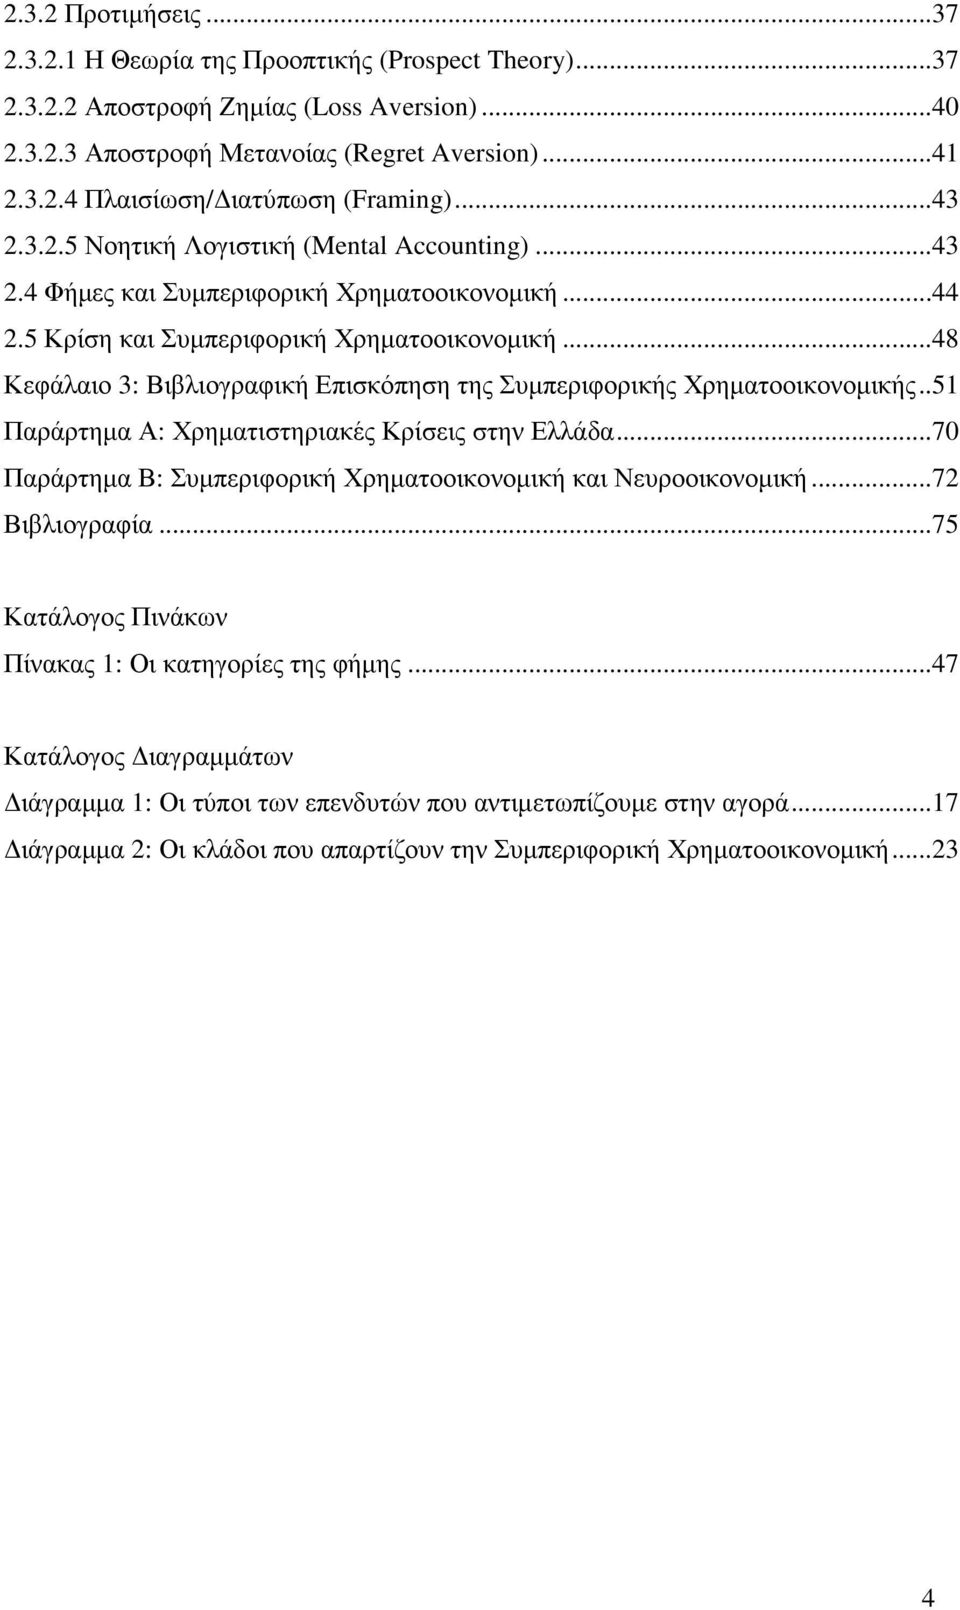 ..48 Κεφάλαιο 3: Βιβλιογραφική Επισκόπηση της Συµπεριφορικής Χρηµατοοικονοµικής..51 Παράρτηµα Α: Χρηµατιστηριακές Κρίσεις στην Ελλάδα.